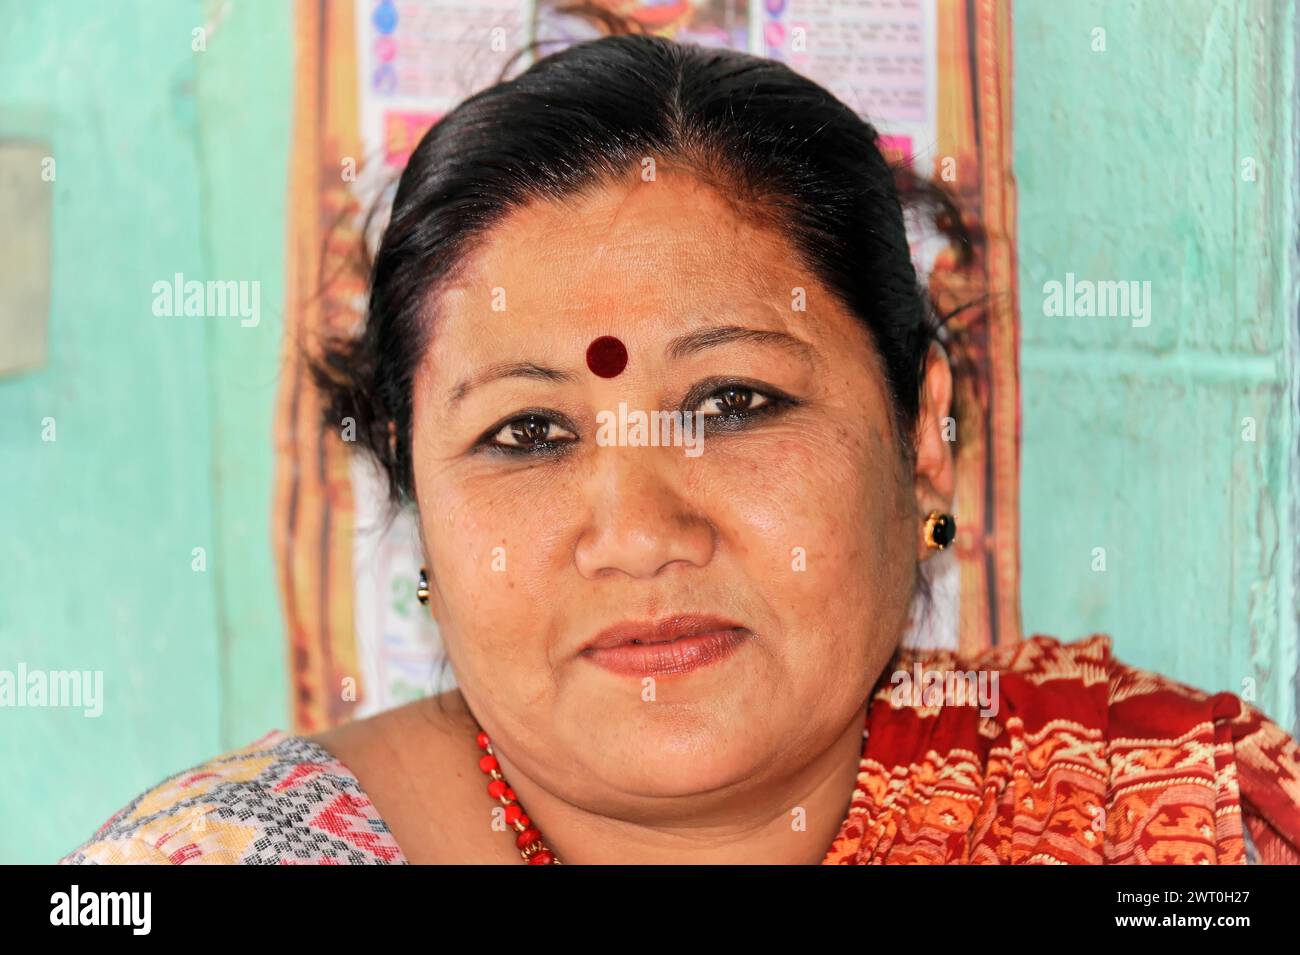 Ritratto di una donna con bindi rossi e gioielli, espressione seria, Pokhara Valley, Pokhara, Nepal Foto Stock